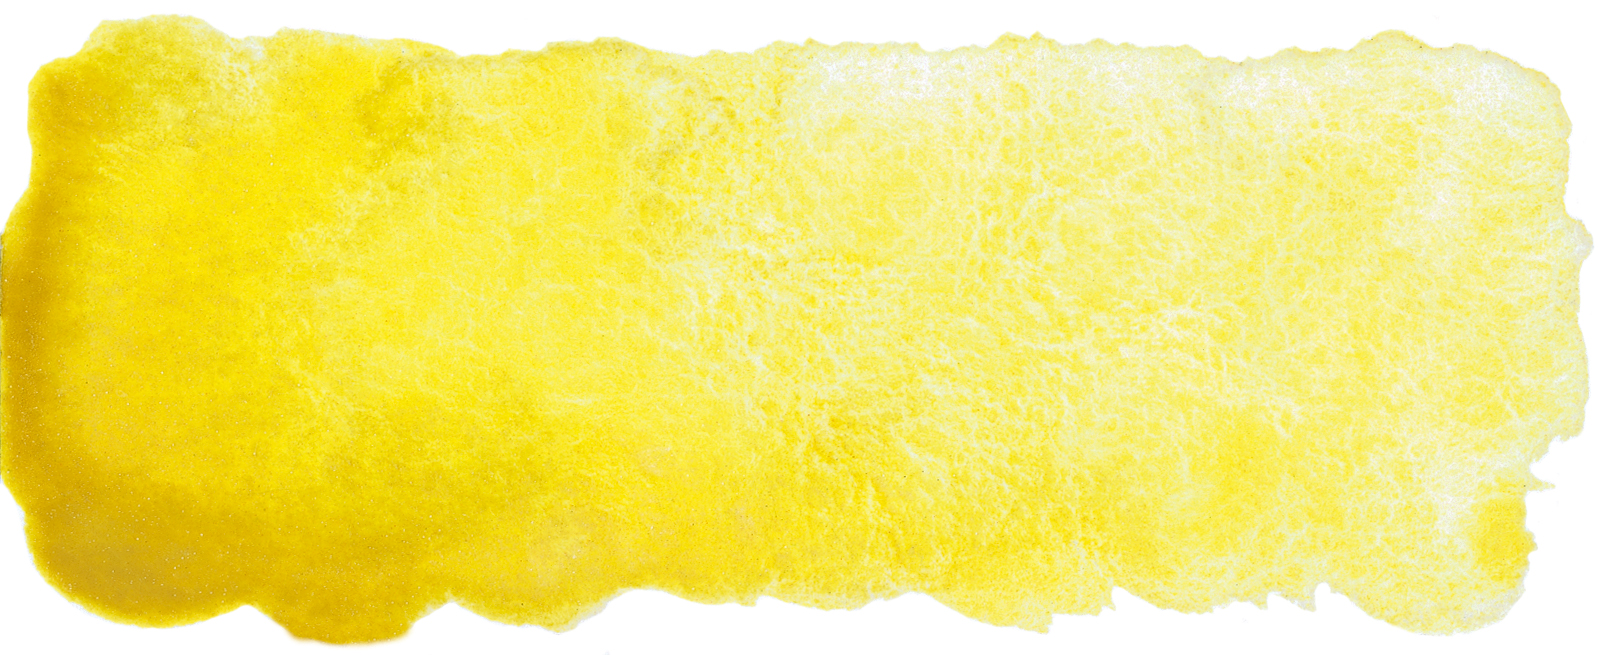 volcano yellow